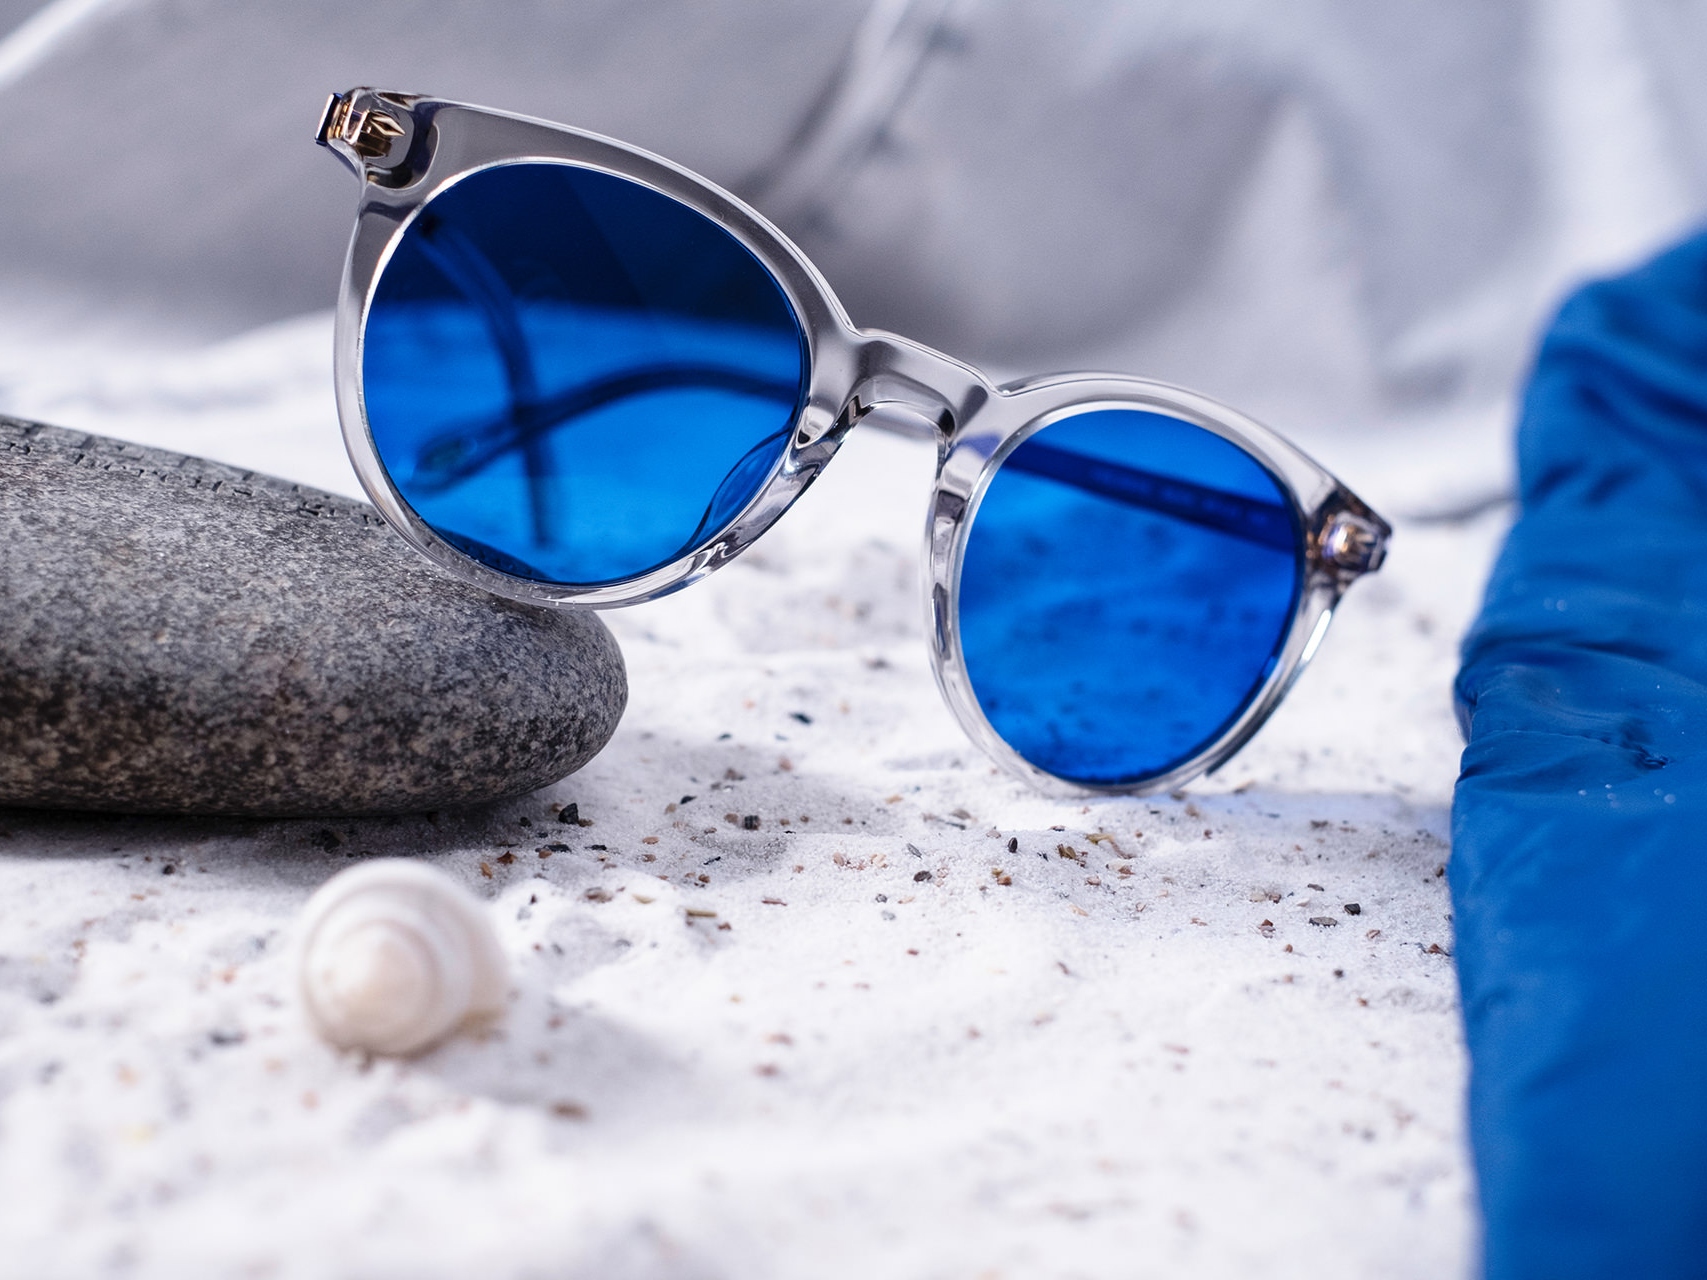 Изображение солнцезащитных очков с синей тонировкой, наполовину лежащих на камне